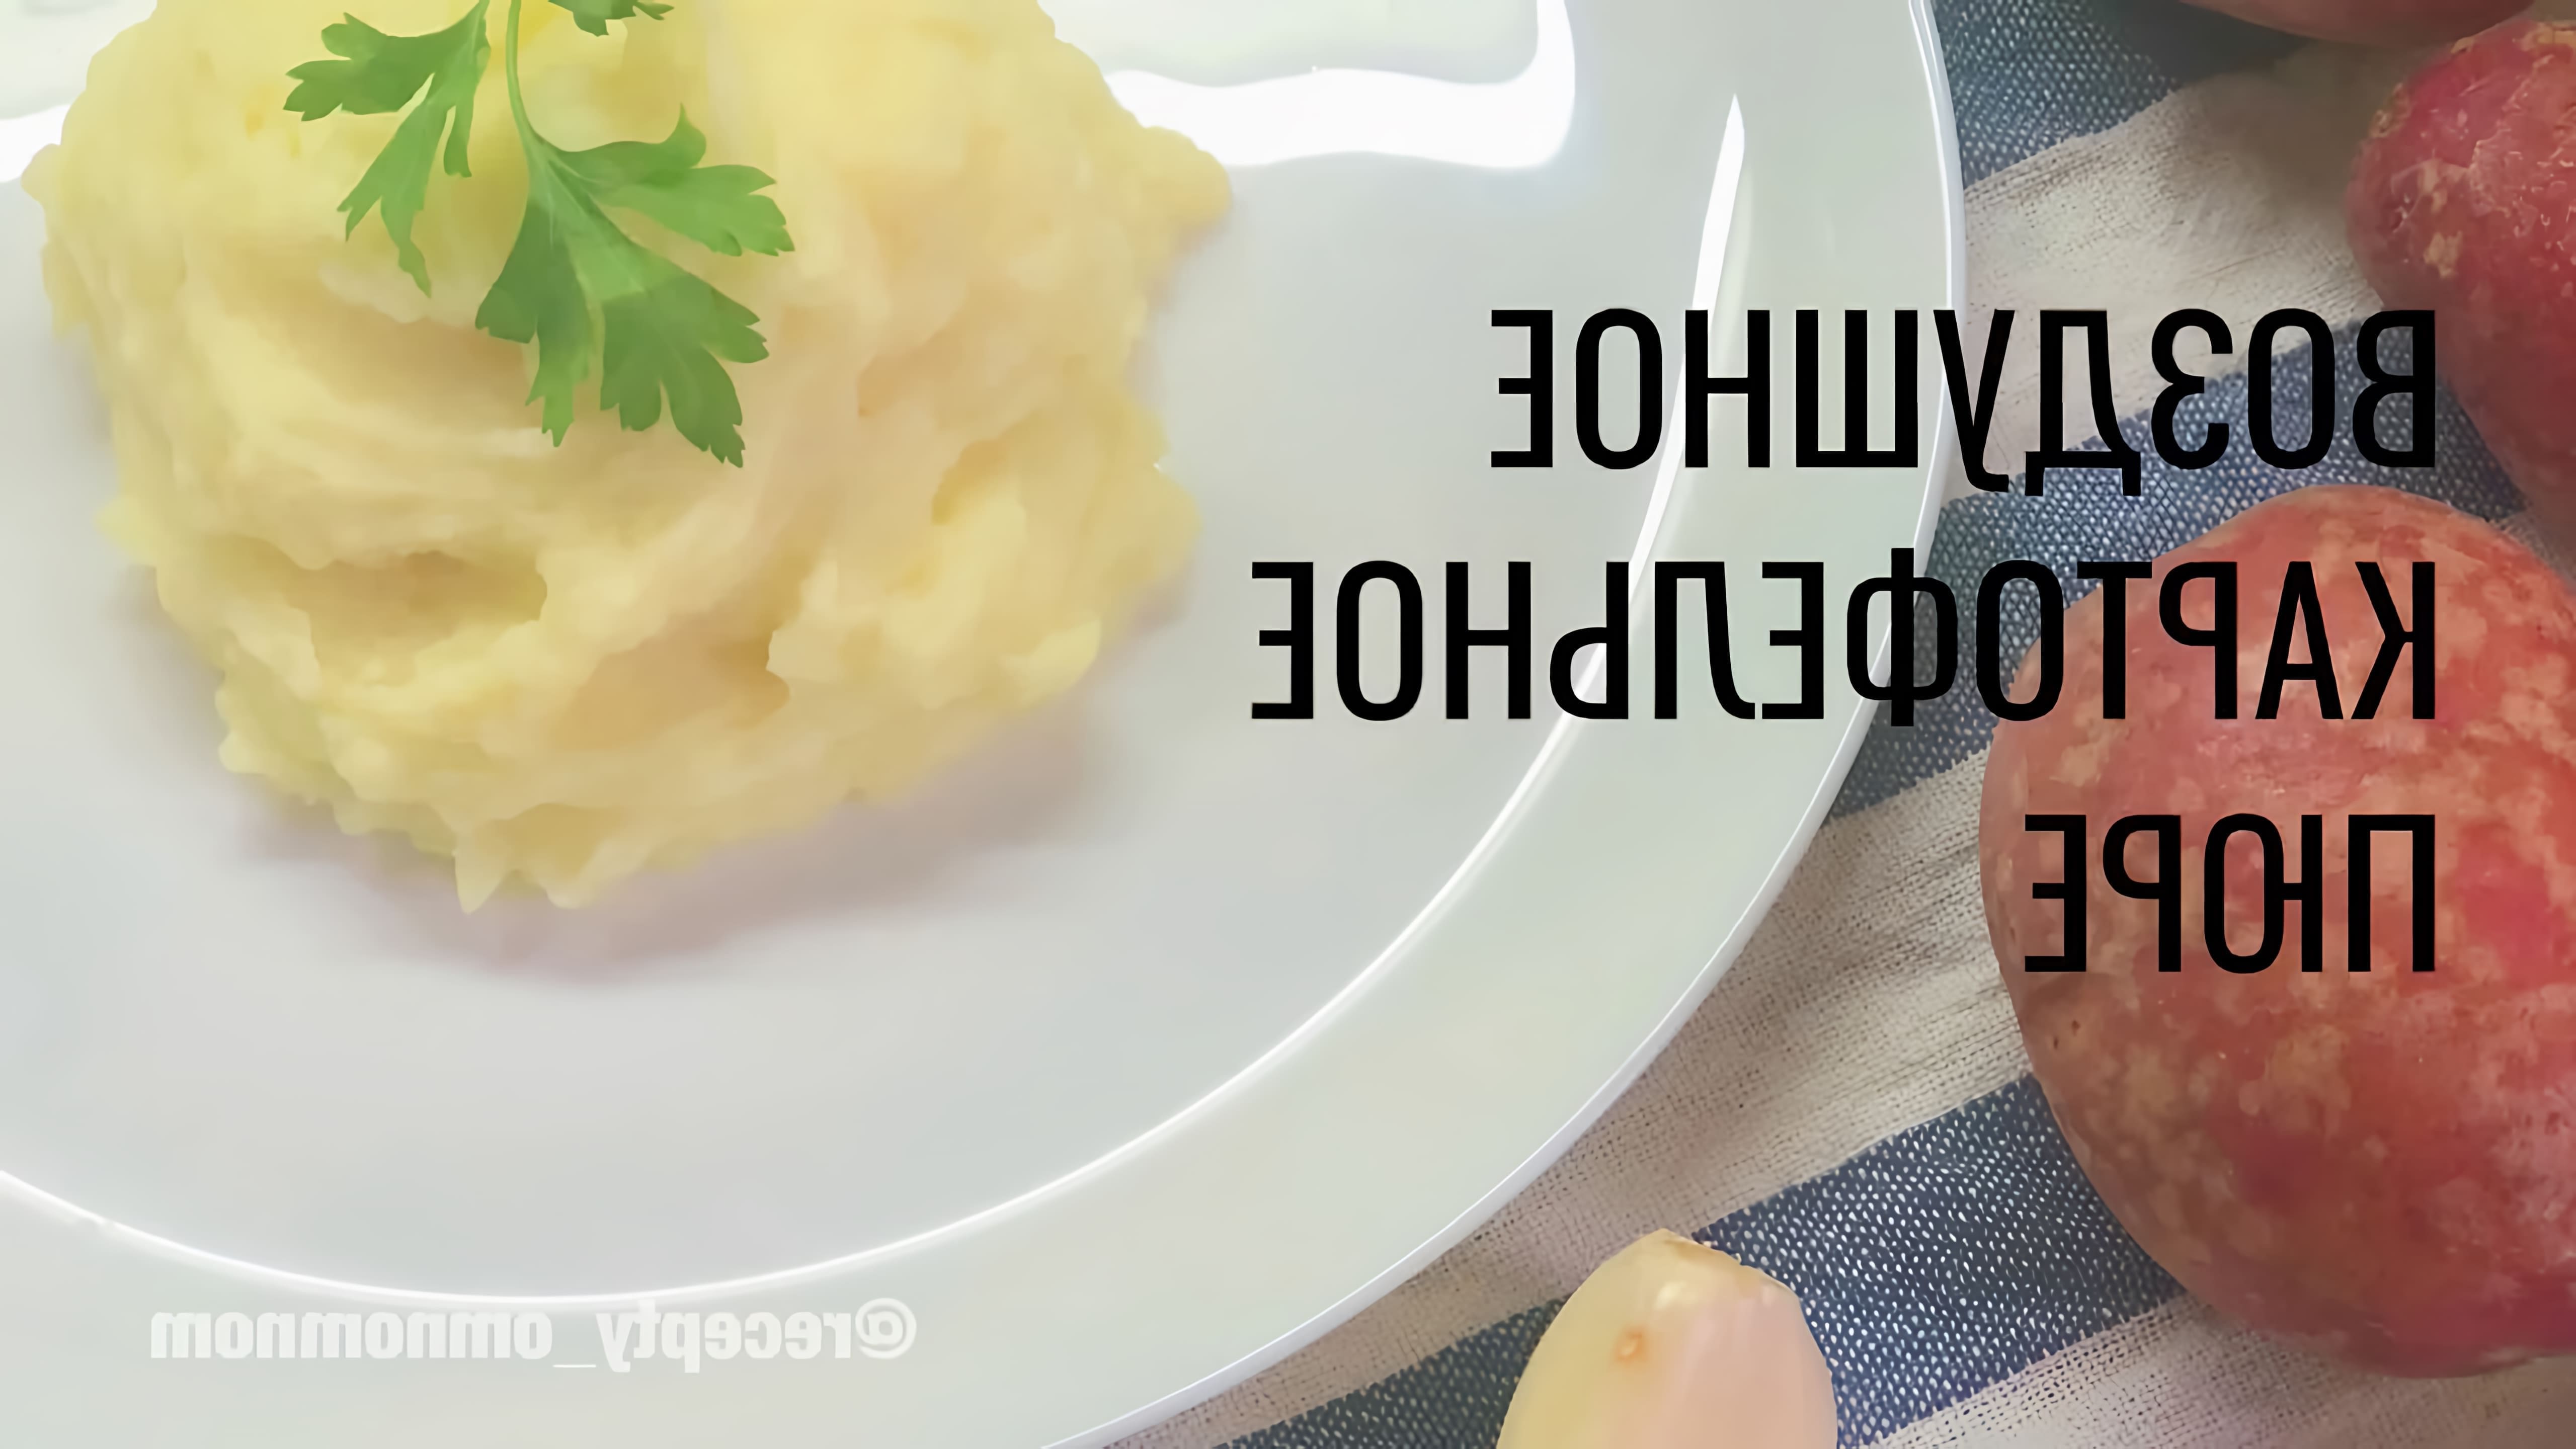 Картофельное пюре с молоком - это вкусное и простое блюдо, которое можно приготовить в домашних условиях